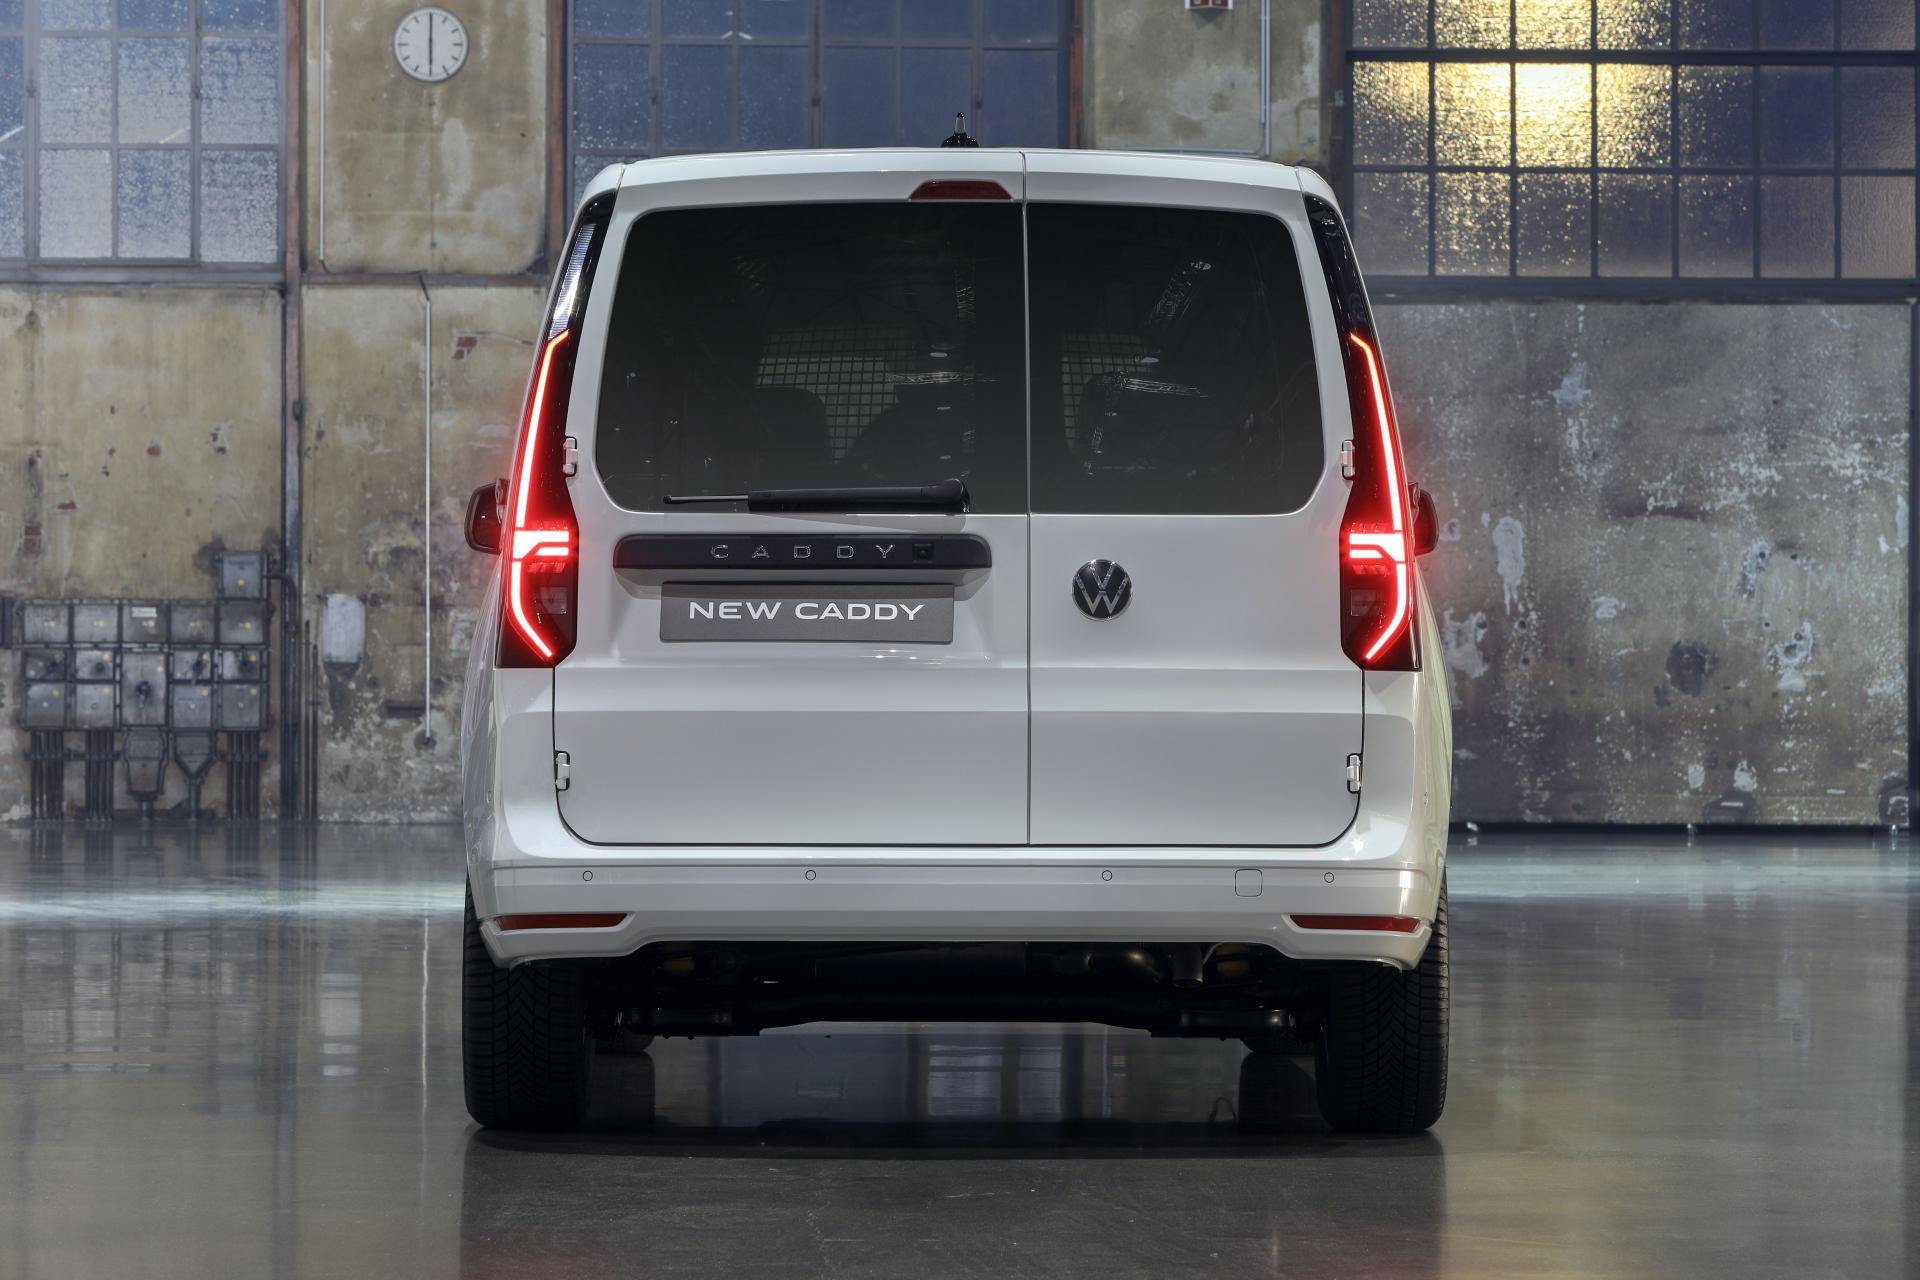 Oto nowy Volkswagen Caddy 2021 nowe oświetlenie ledowe i